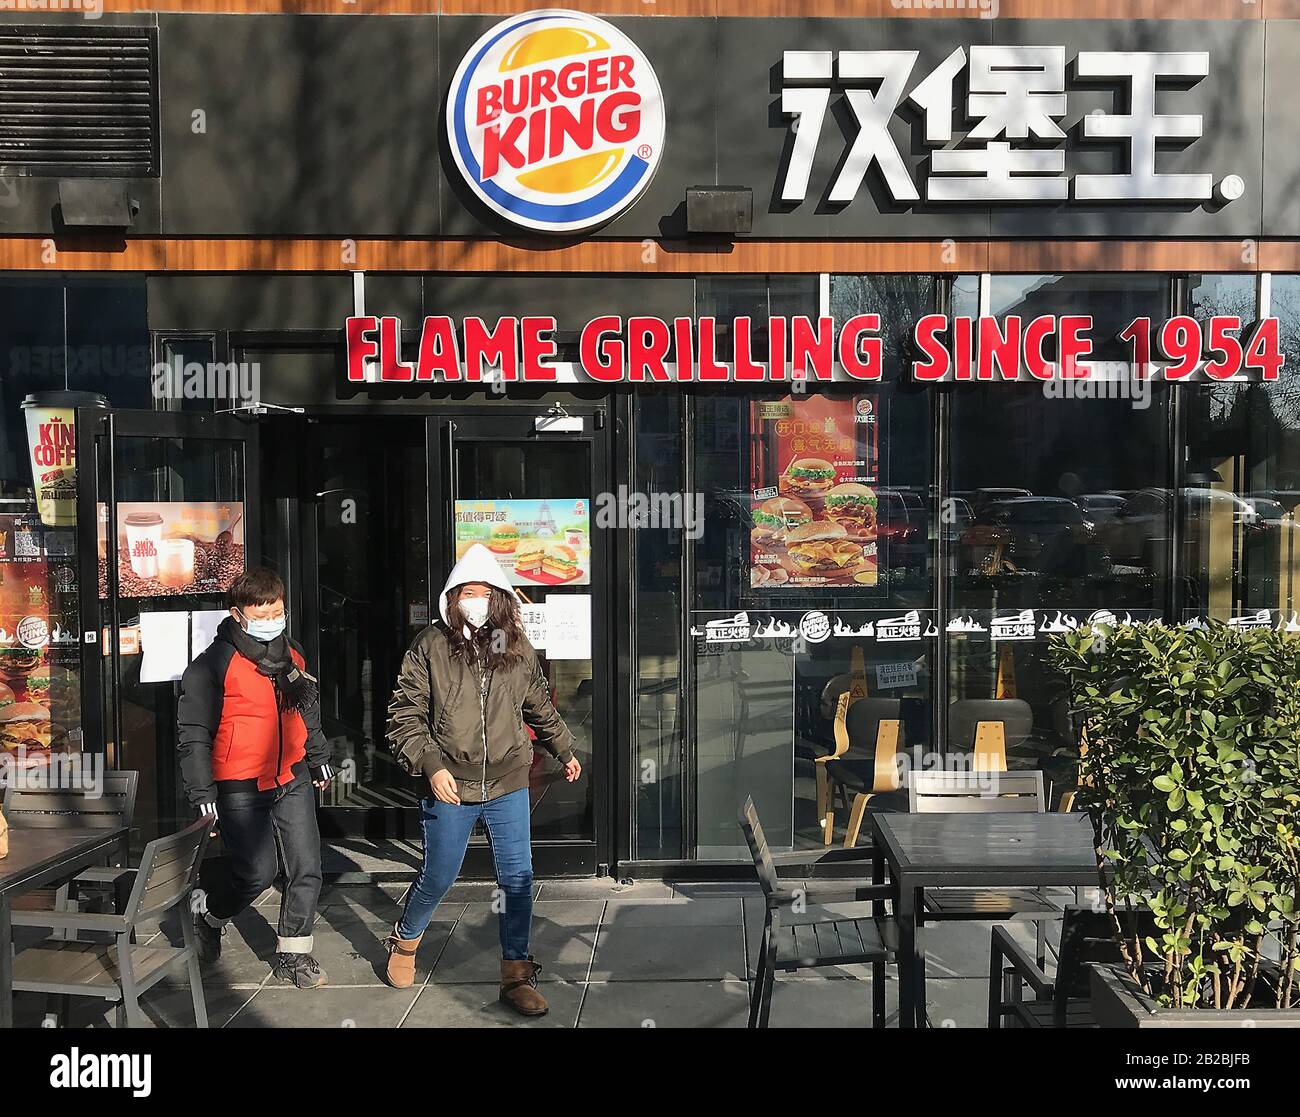 Pekín, China. 2 de marzo de 2020. Burger King's, McDonald's y KFC's requieren pruebas térmicas y máscaras protectoras para entrar en sus tiendas debido a la amenaza de difundir el letal coronavirus (Covid-19) en Beijing el lunes 2 de marzo de 2020. El letal y novedoso coronavirus ha matado a más de 3,000 personas en todo el mundo, la mayoría en China. Se han confirmado más de 88,000 casos, con infecciones en más de 56 países y en todos los continentes, excepto la Antártica. Foto de Stephen Shaver/UPI crédito: UPI/Alamy Live News Foto de stock